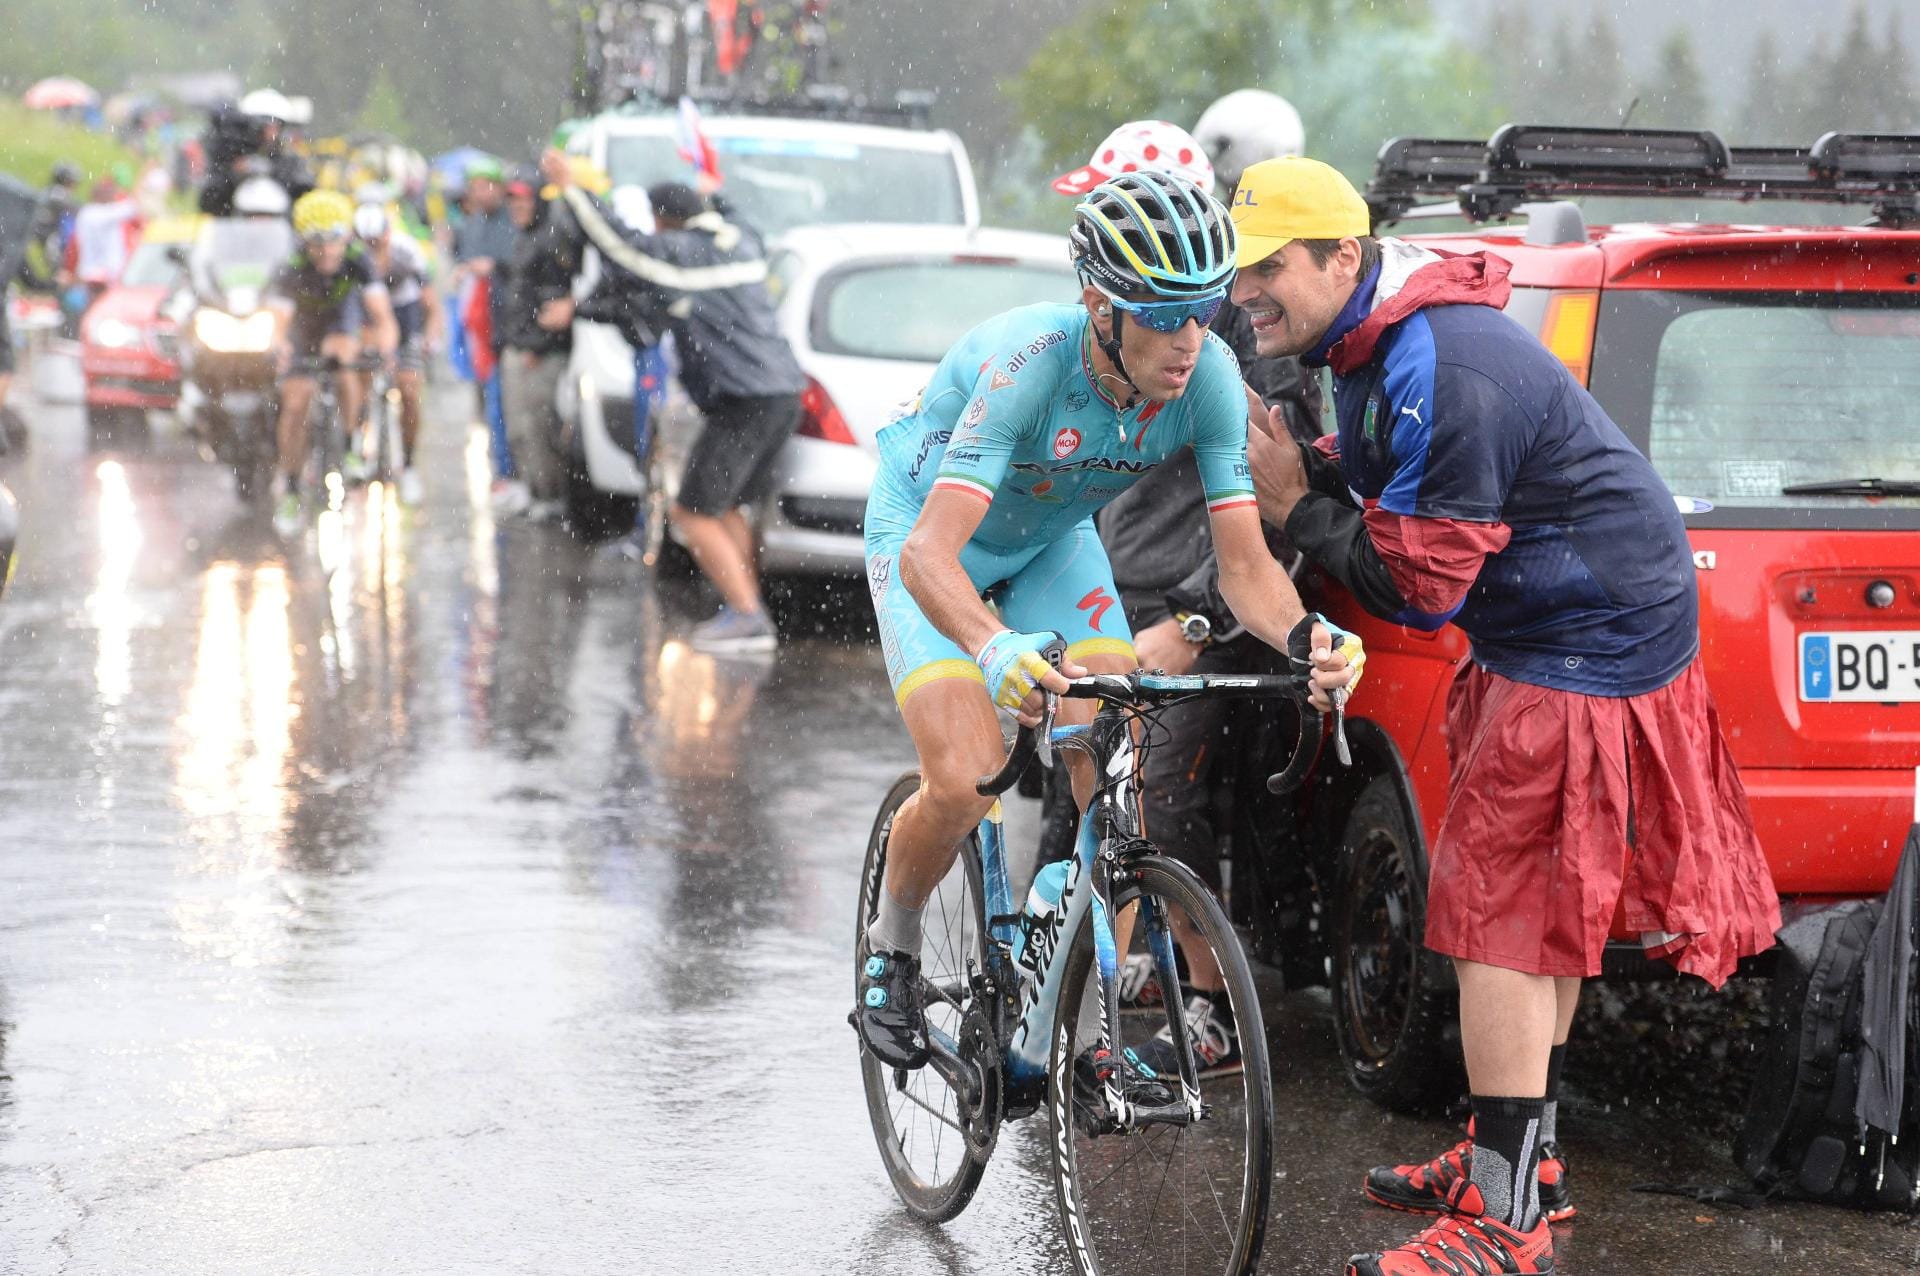 Am Schlussanstieg prasselte es dann gehörig auf die Radprofis nieder. Hier kämpft sich der ehemalige Gesamtsieger Vincenzo Nibali durch den Regen.